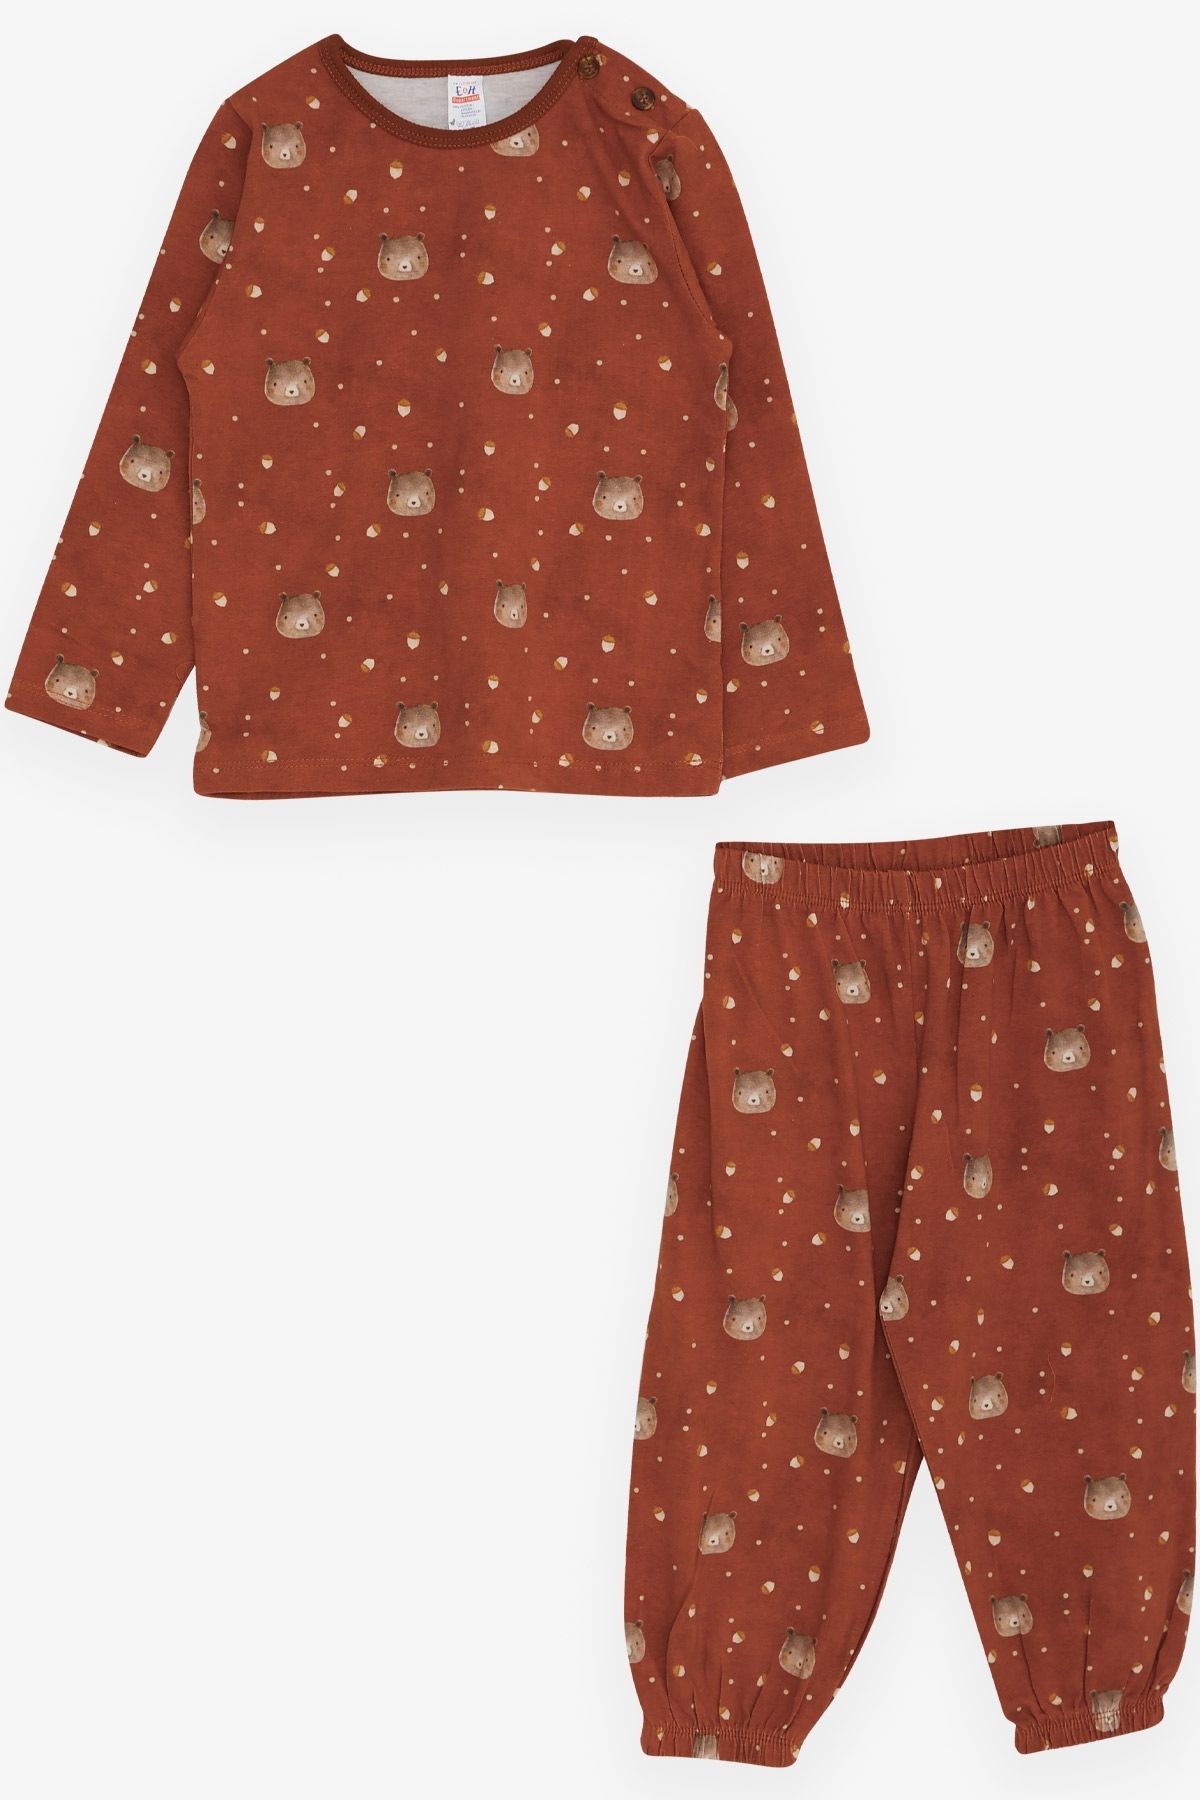 Breeze Erkek Bebek Pijama Takımı Ayıcık Desenli 9 Ay-3 Yaş, Kahverengi